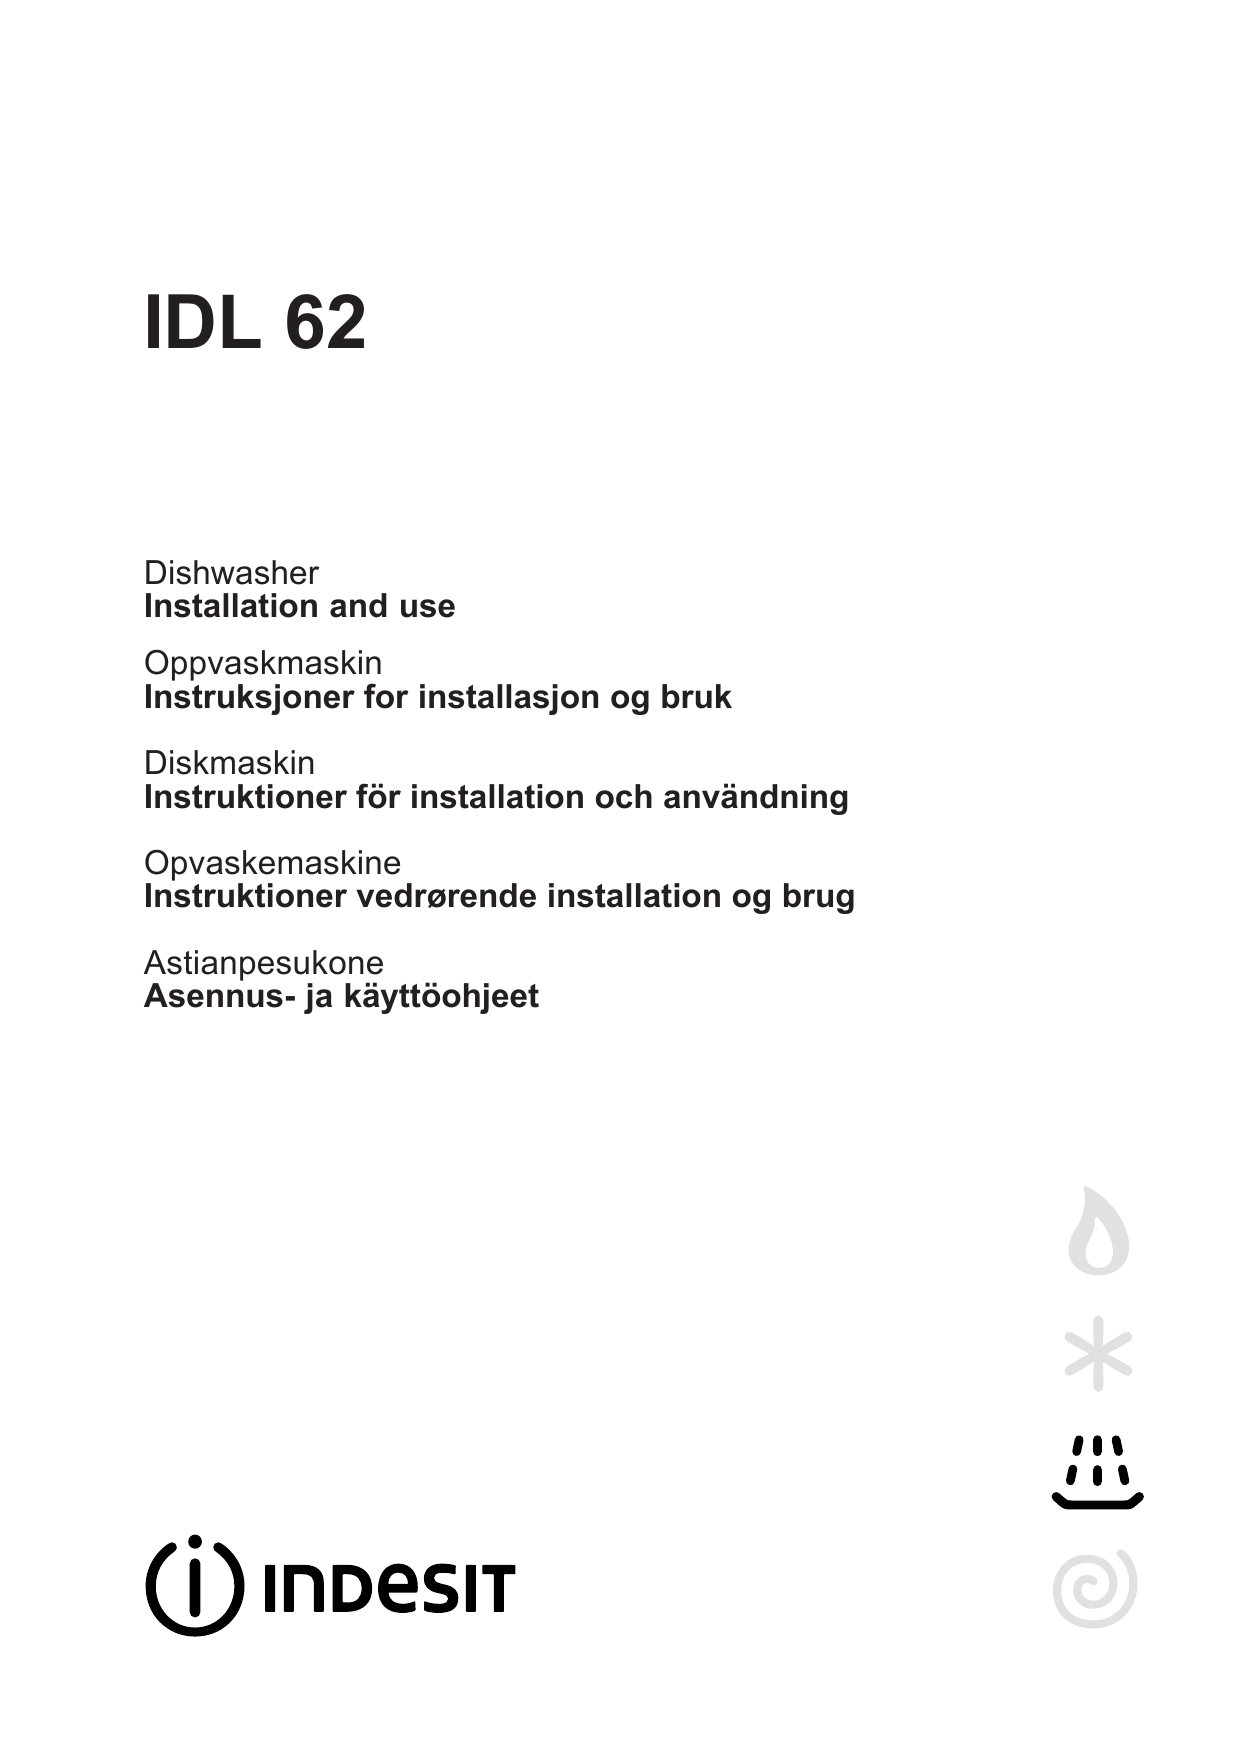 Limited Robe Kig forbi Indesit IDL 62 SK.2 Brugervejledning | Manualzz